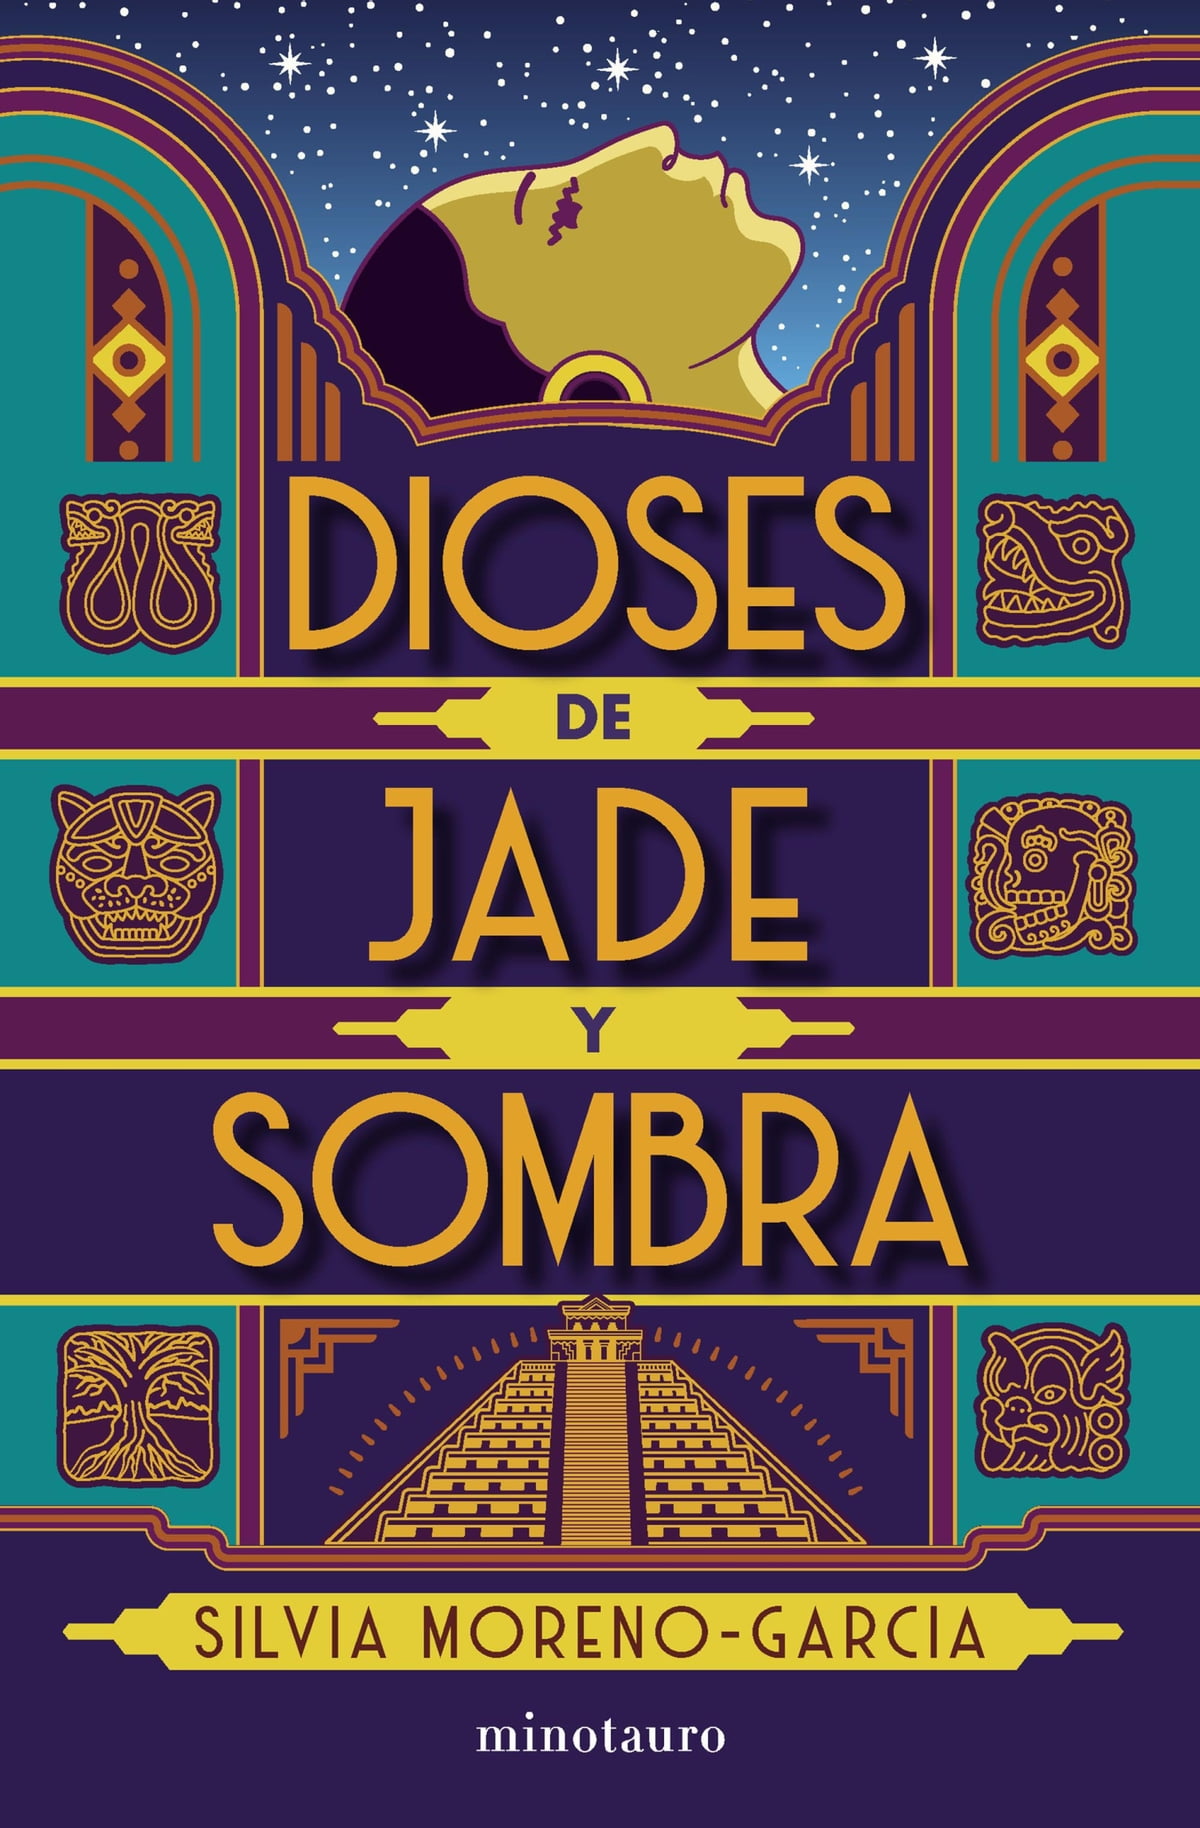 Silvia Moreno-Garcia: Dioses de jade y sombra (español language, 2021, Minotauro)